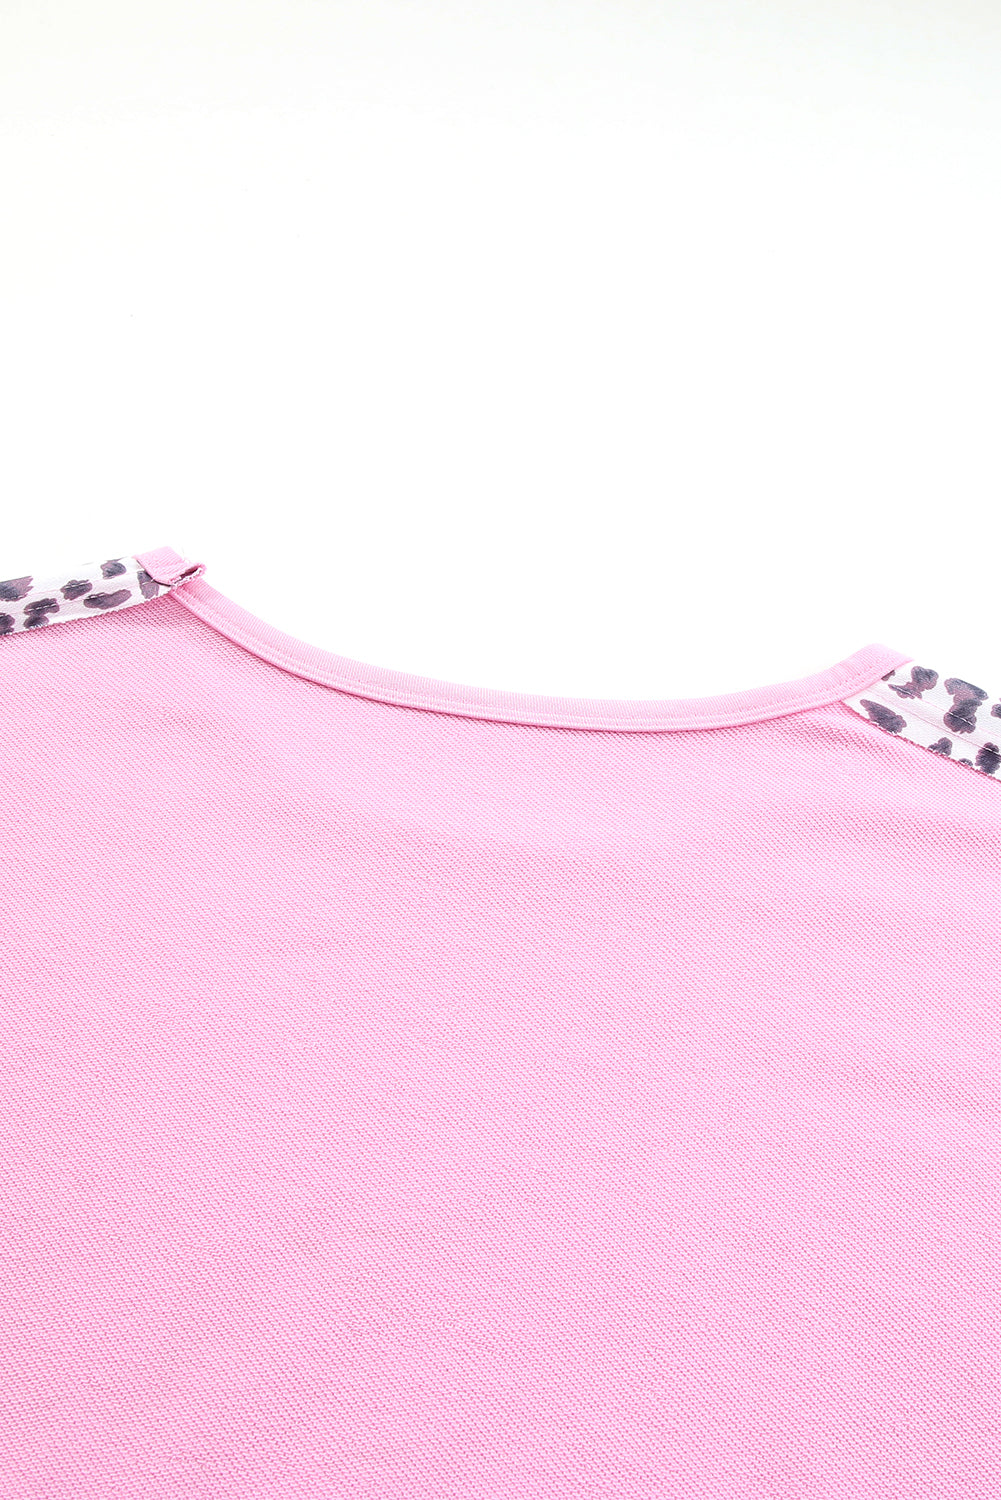 Ružičasta majica veće veličine s otkrivenim šavovima u obliku leoparda